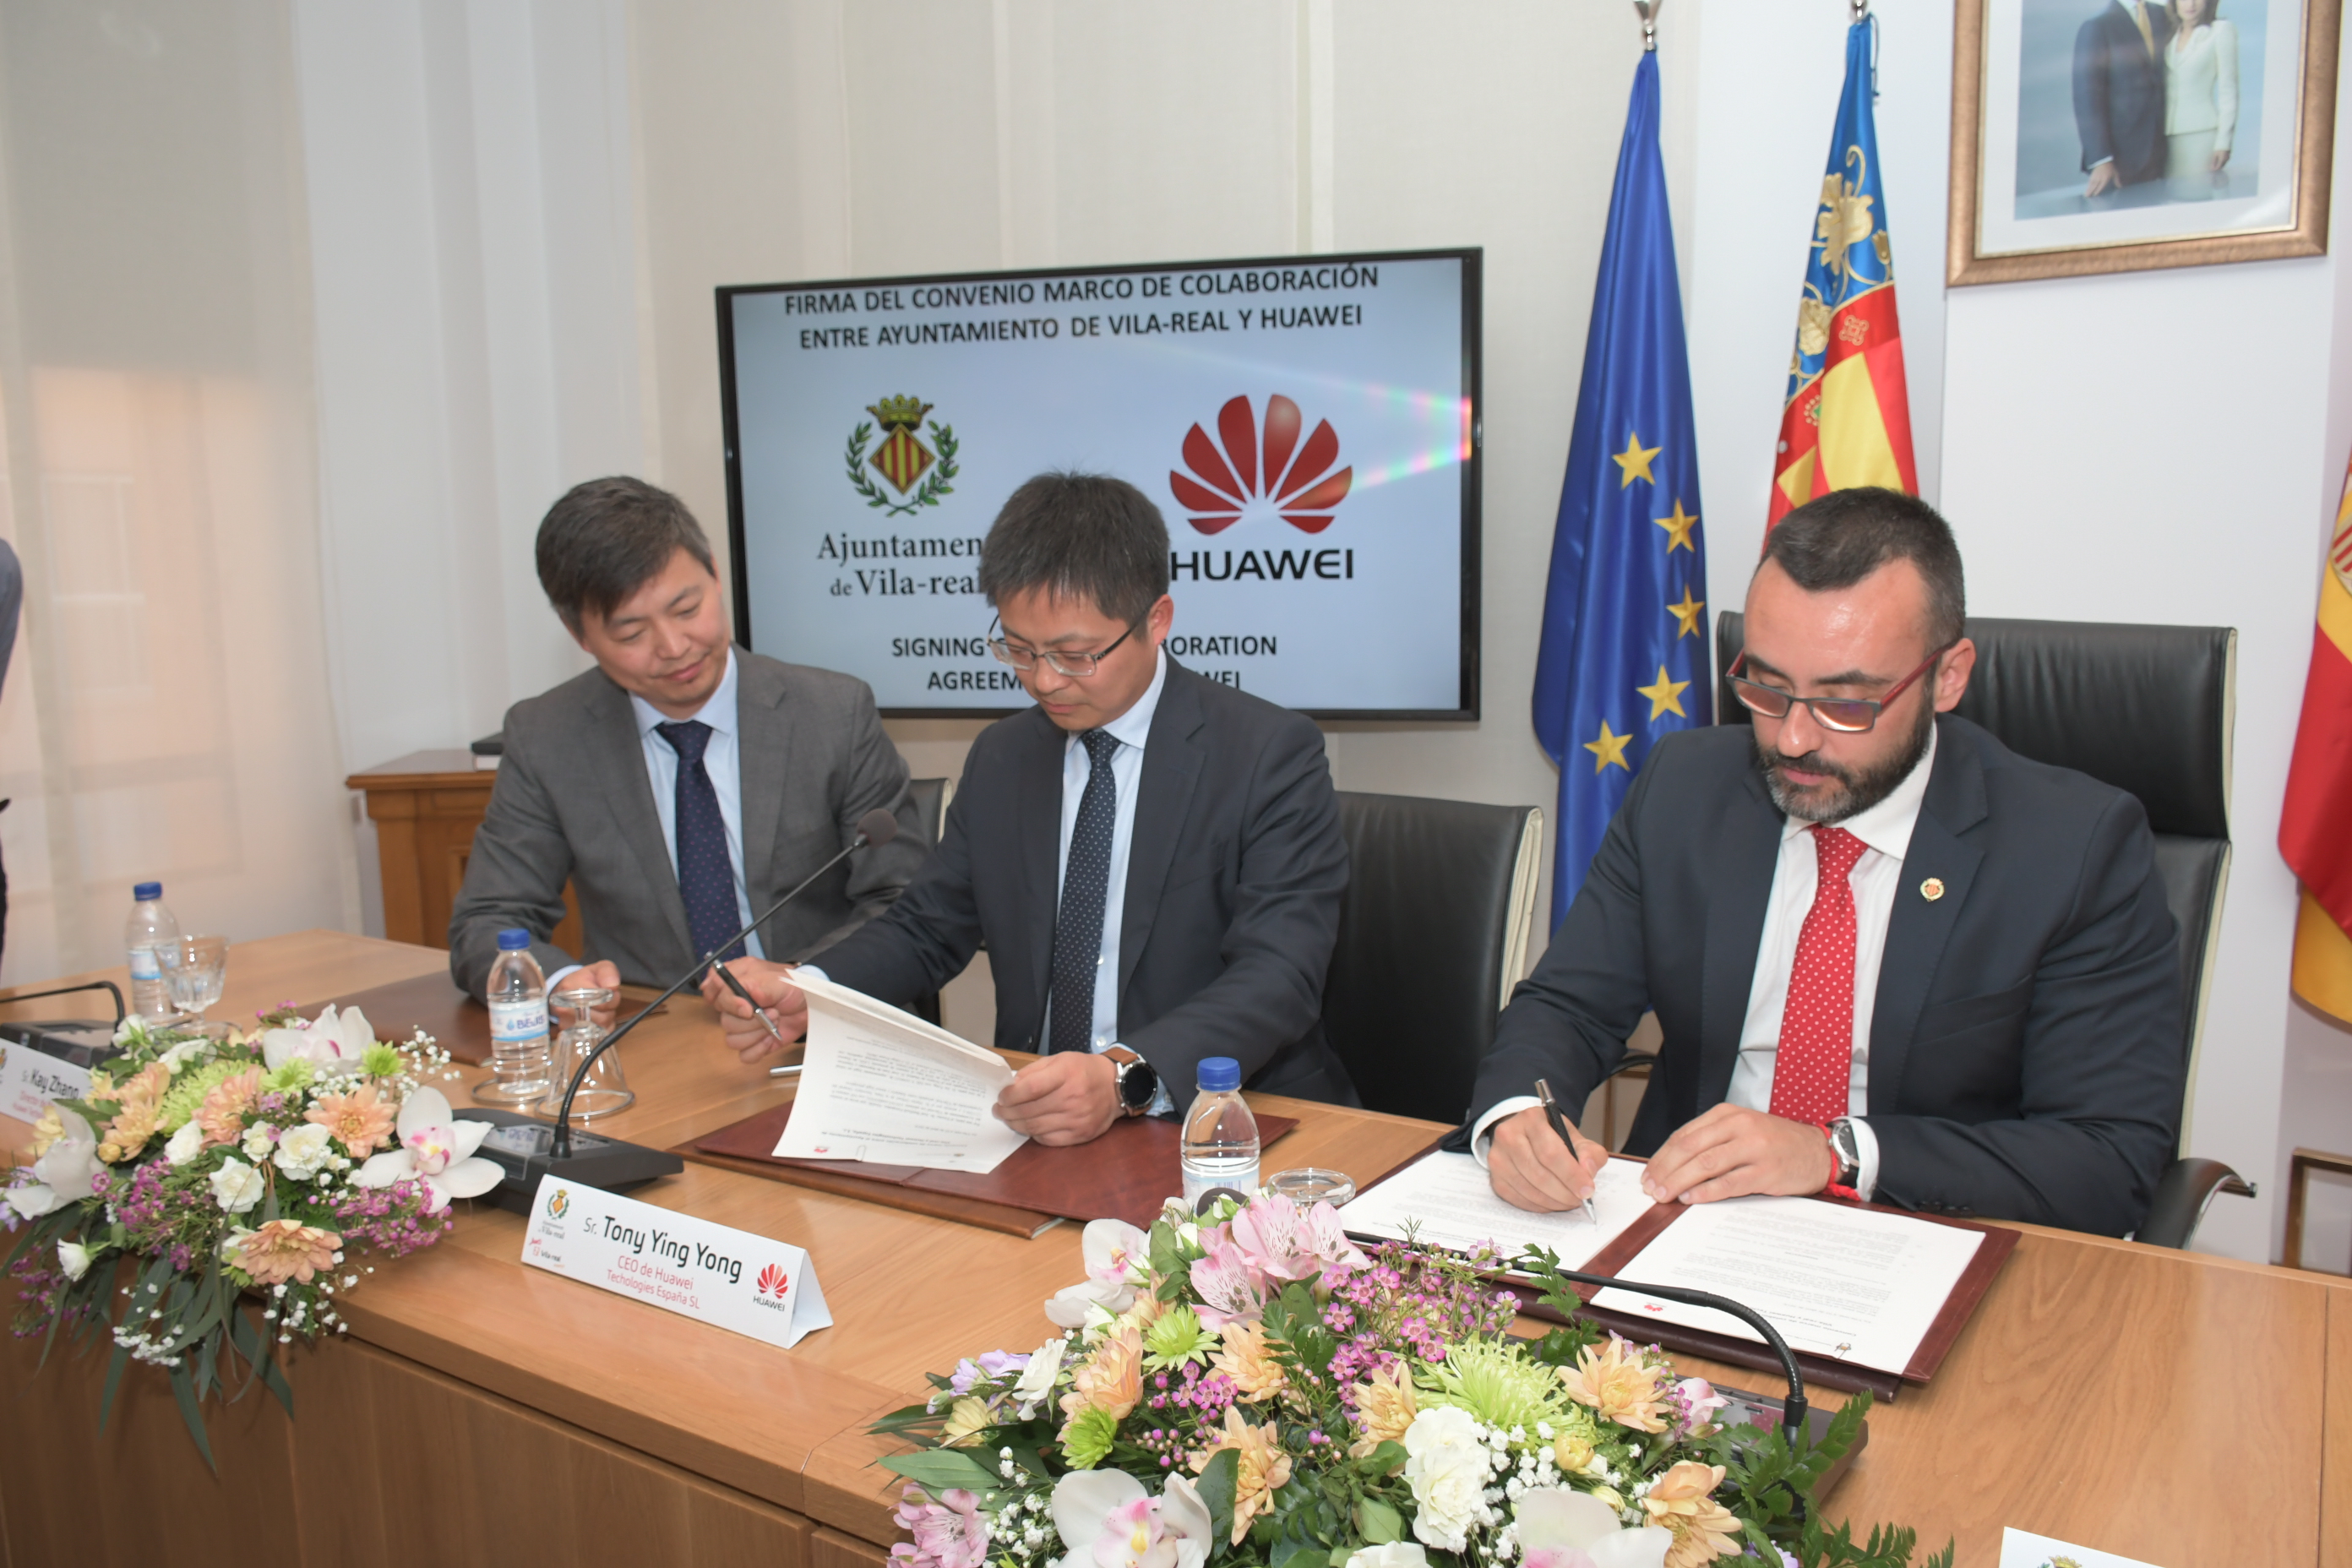 Vila-real y Huawei formalizan el acuerdo para hacer de la ciudad un referente tecnológico.